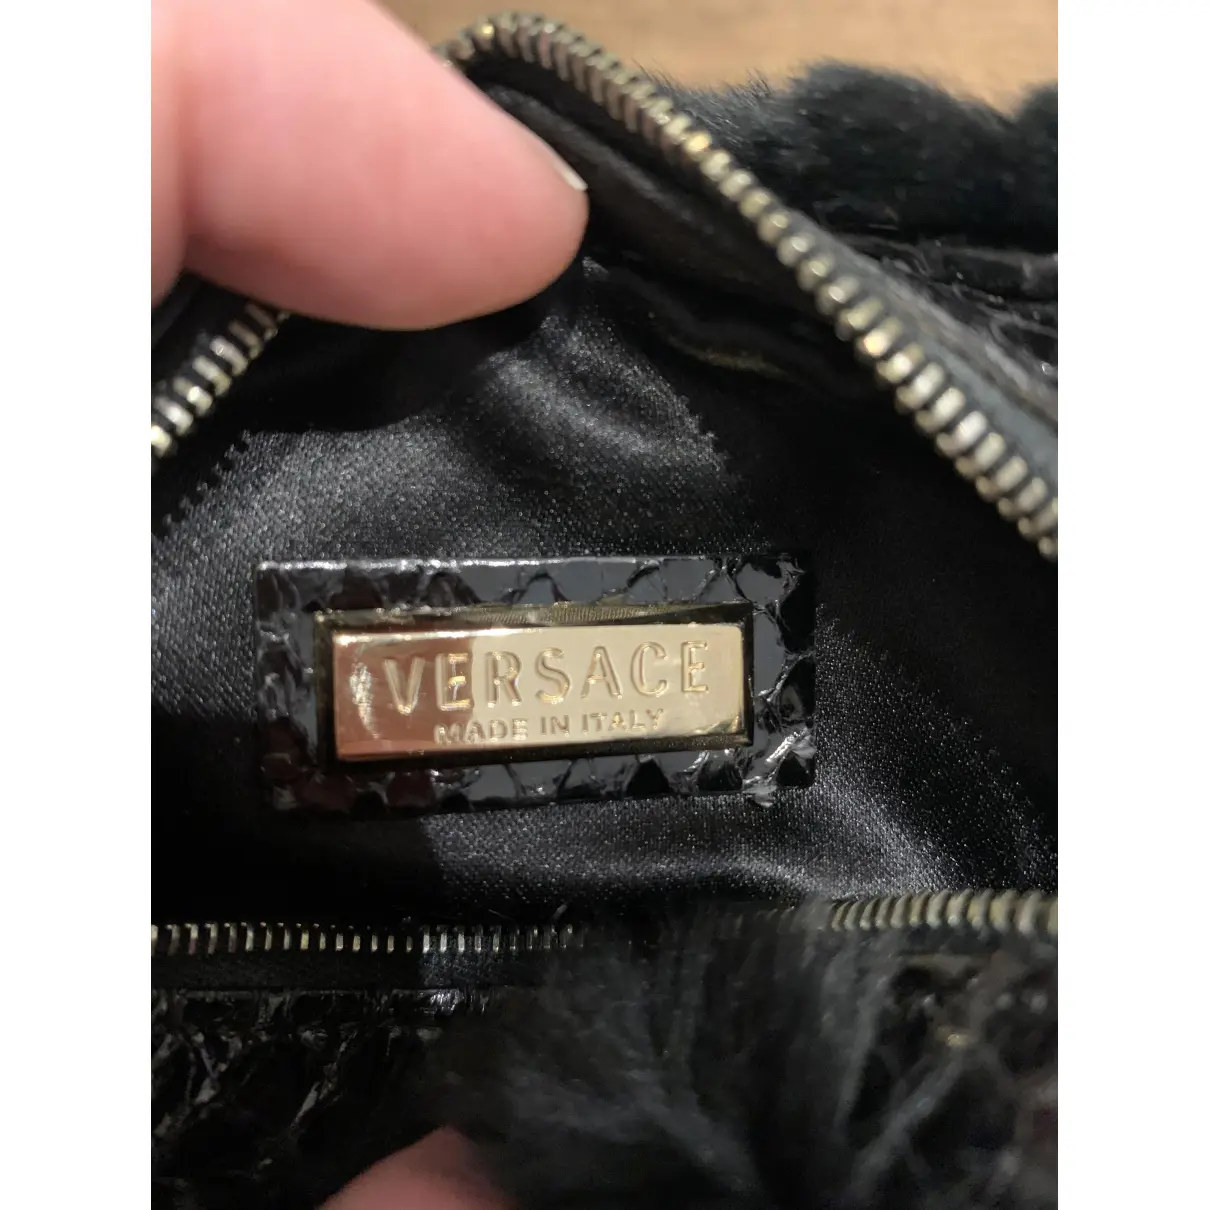 Buy Versace Rabbit handbag online